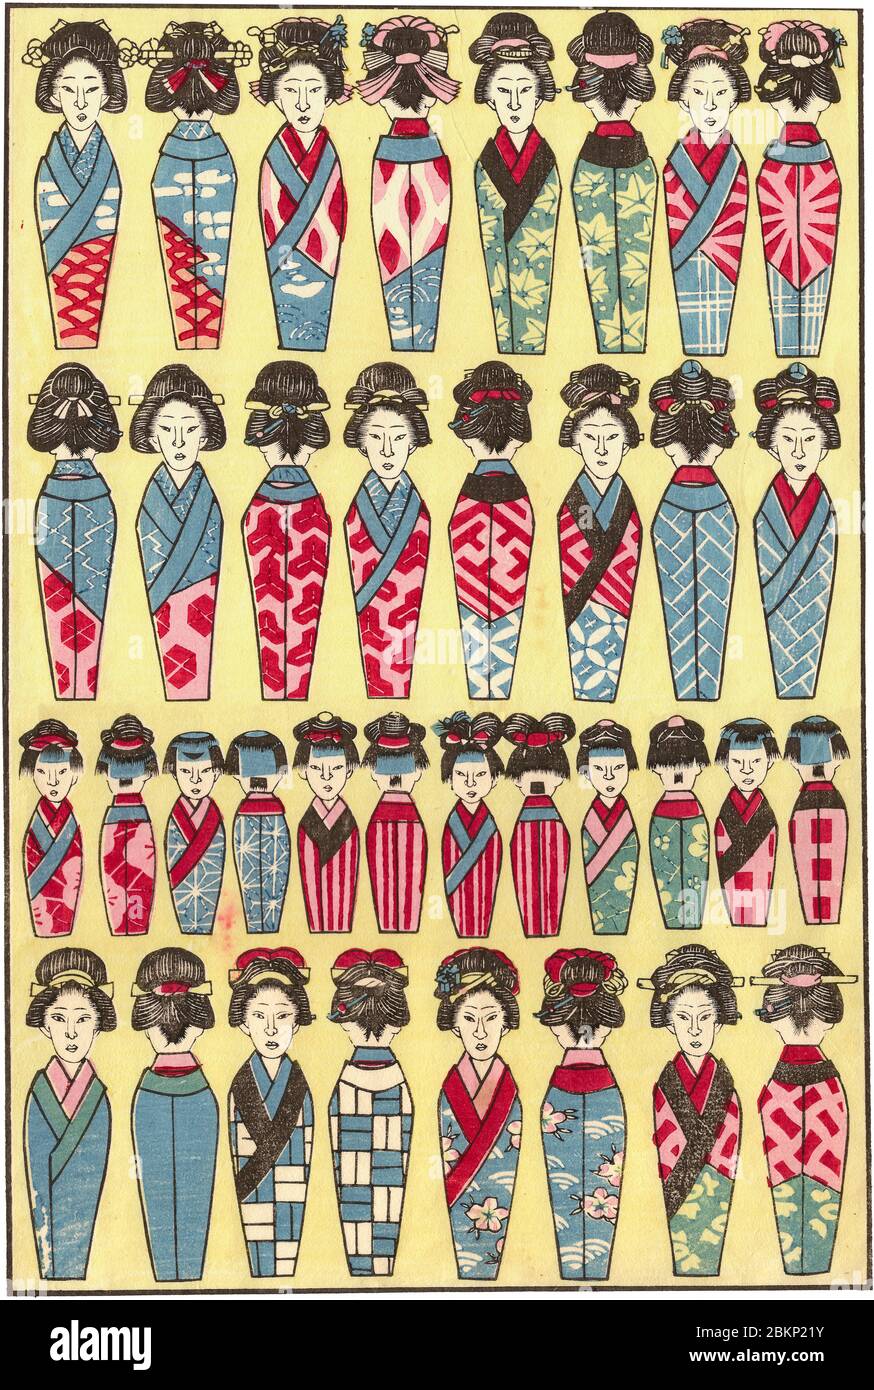 [ Japon des années 1930 - Woodblock Print of Women and Children ] — Chiyogami (千代紙) affiche des femmes et des enfants avec des coiffures différentes. Chiyogami est un papier décoré de motifs et de thèmes imprimés en blocs de bois de couleurs vives, produits pour la première fois par des artistes Ukiyo-e à la fin du XVIIIe siècle. Le papier est très populaire aujourd'hui pour l'artisanat et la création de kimono pour les poupées en papier. Imprimé Ukiyoe vintage du XXe siècle. Banque D'Images